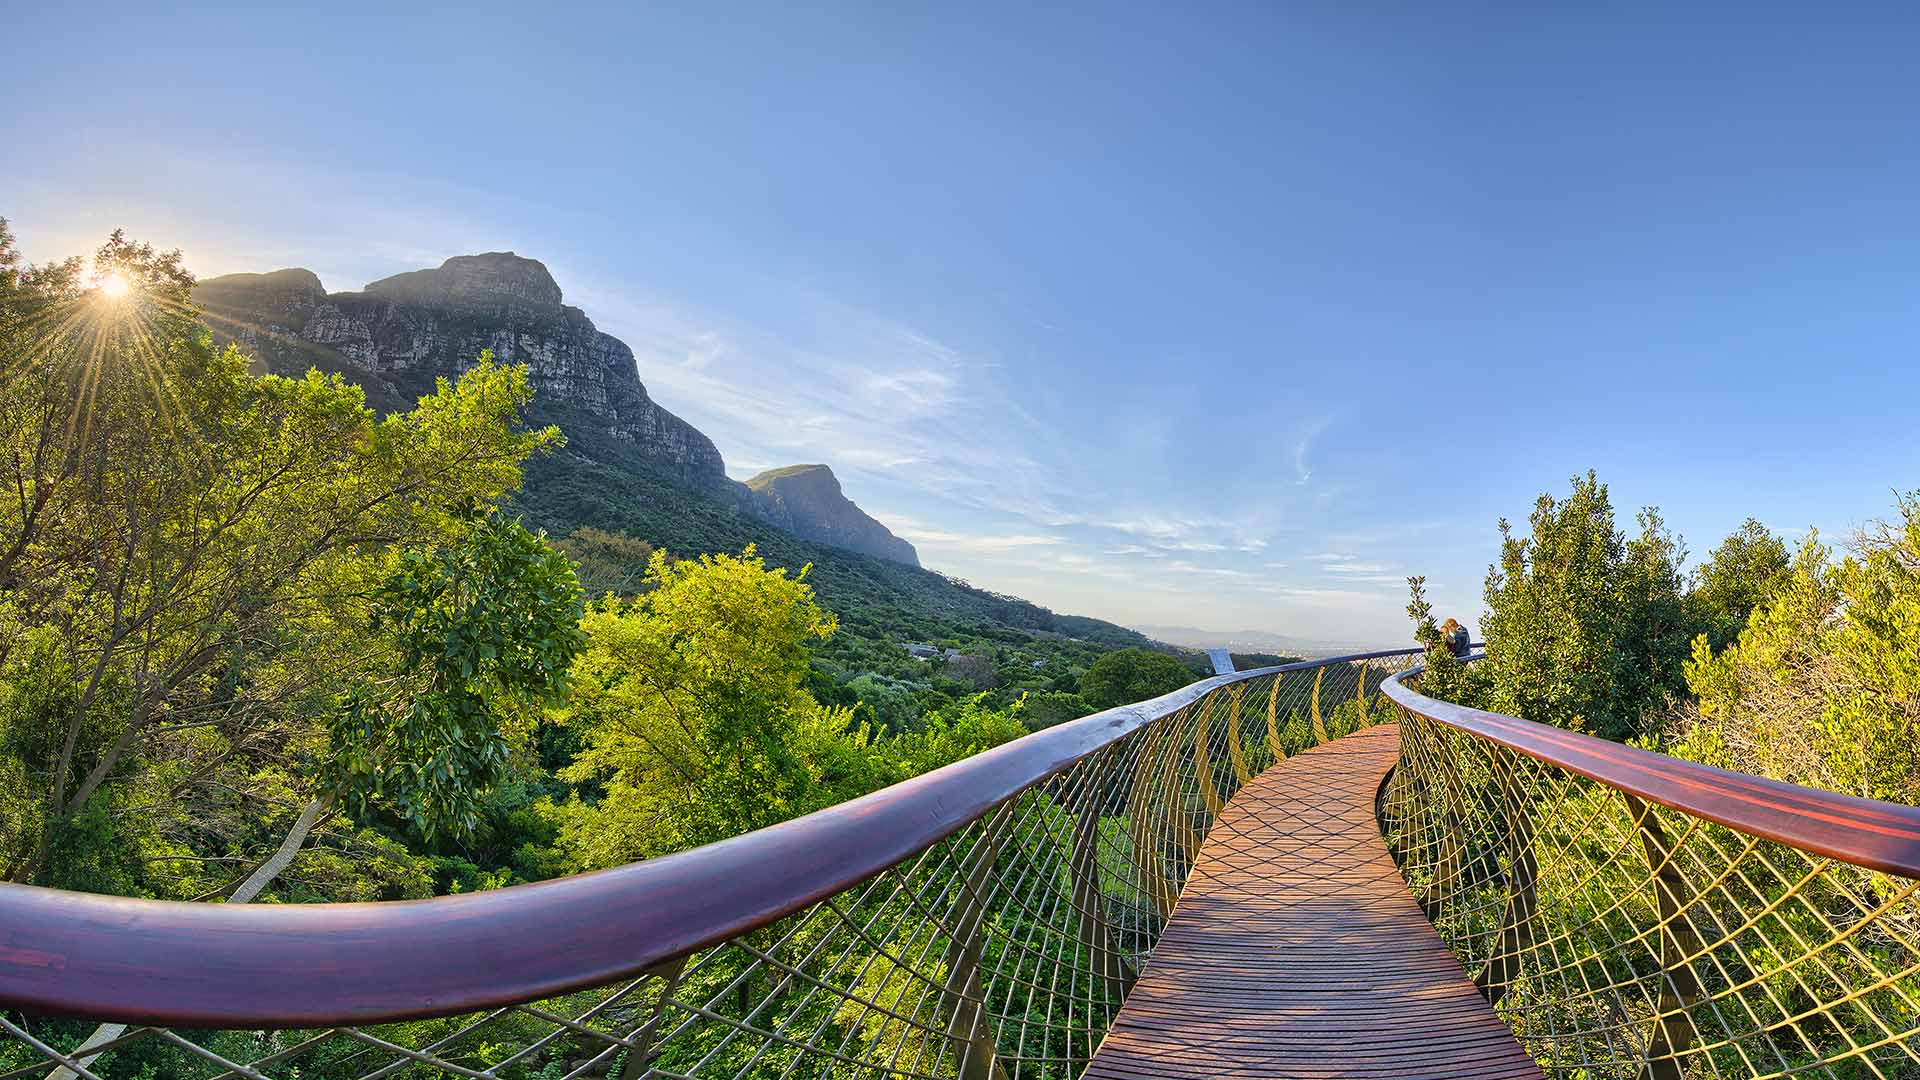 Les plus jardins du monde - kisrtenbosch - Afrique du Sud